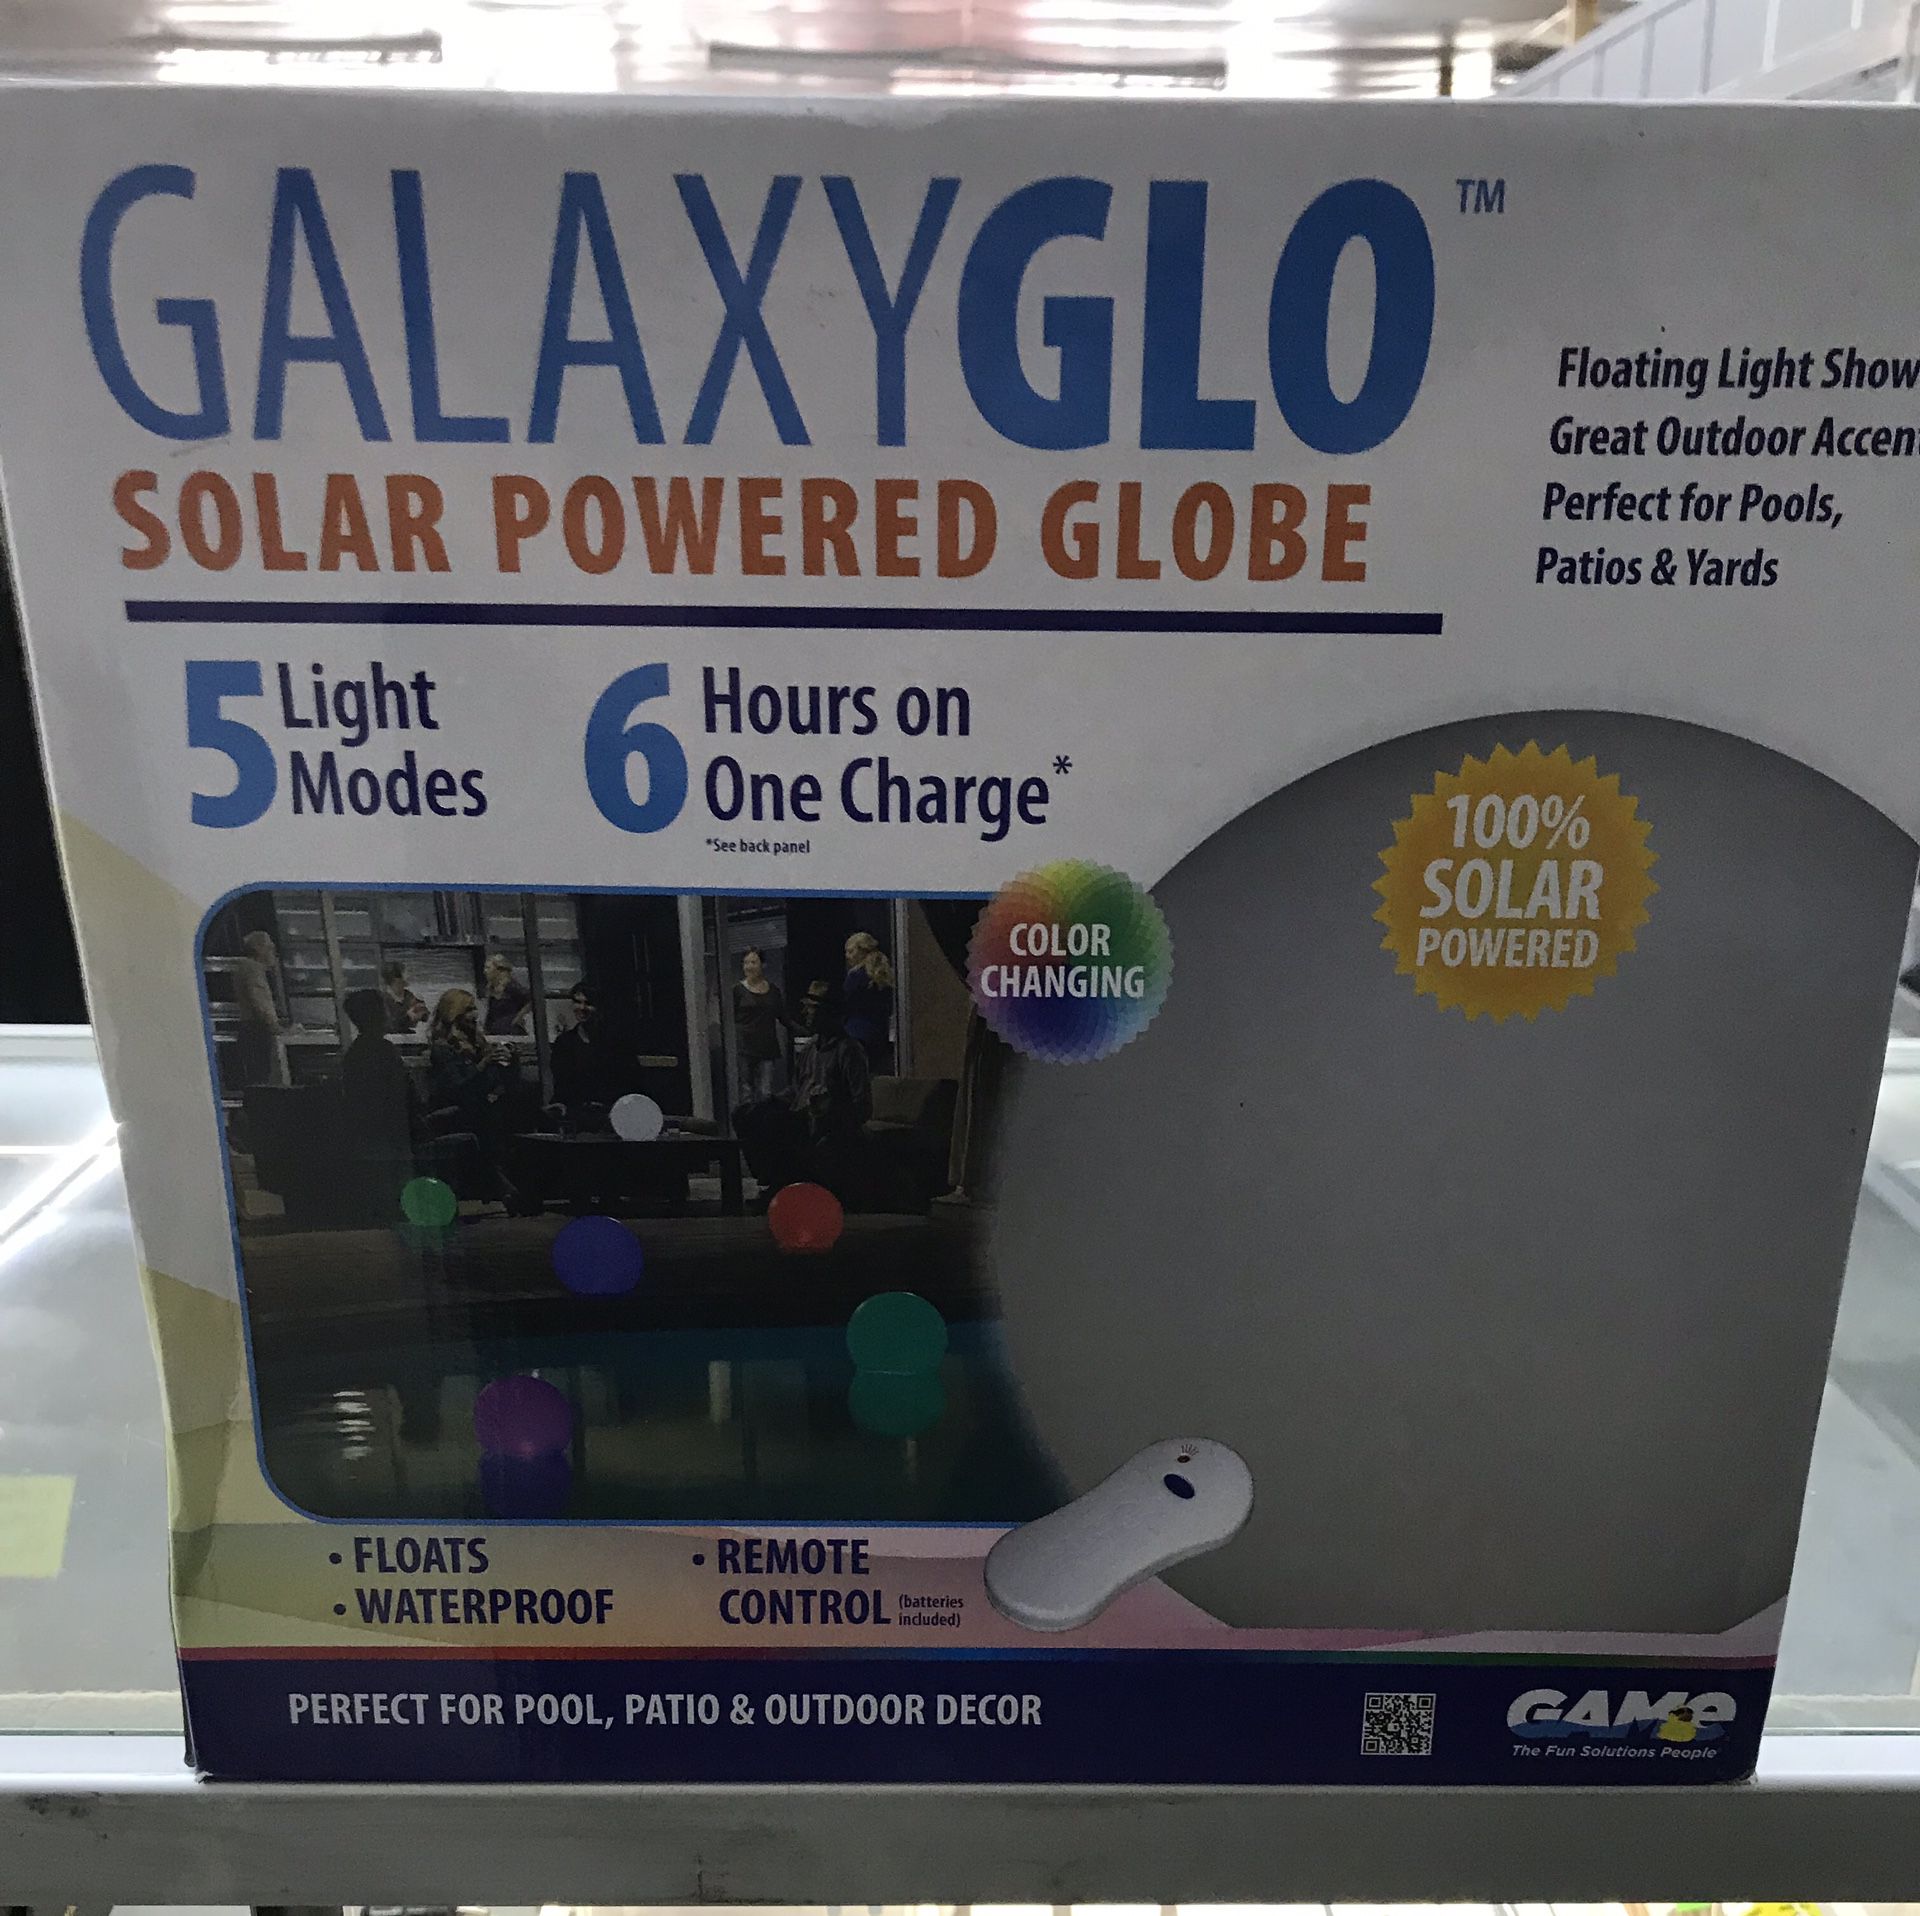 GalaxyGlo Solar Powered Globe